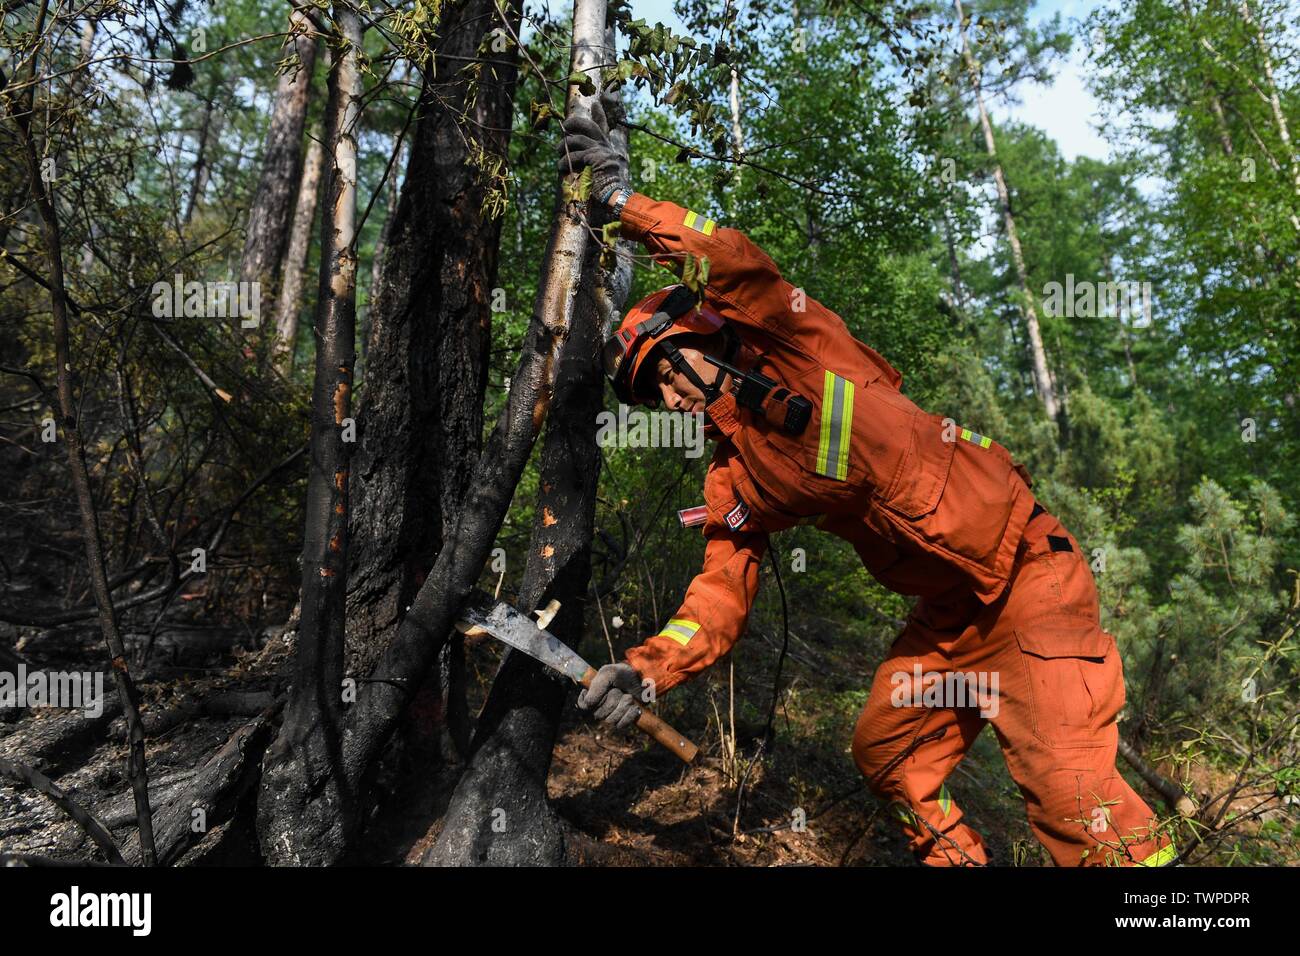 Genhe. 22 Juin, 2019. Un pompier supprime un holocauste à l'arbre vers le bas sur les lieux d'un incendie de forêt à Xiushan Ferme du Grand Hinggan, montagnes du nord de la Chine intérieure d'un incendie de forêt qui ont fait rage pendant trois jours dans le nord de la Chine, région autonome de Mongolie intérieure a été contenue, les autorités locales ont déclaré samedi. L'opération de nettoyage est en cours à Xiushan, selon le siège de l'incendie. Après un énorme effort de plus de 5 000 pompiers, le feu a été mis sous contrôle sur tous les fronts par 4:40 h le samedi. Credit : Liu Lei/Xinhua/Alamy Live News Banque D'Images